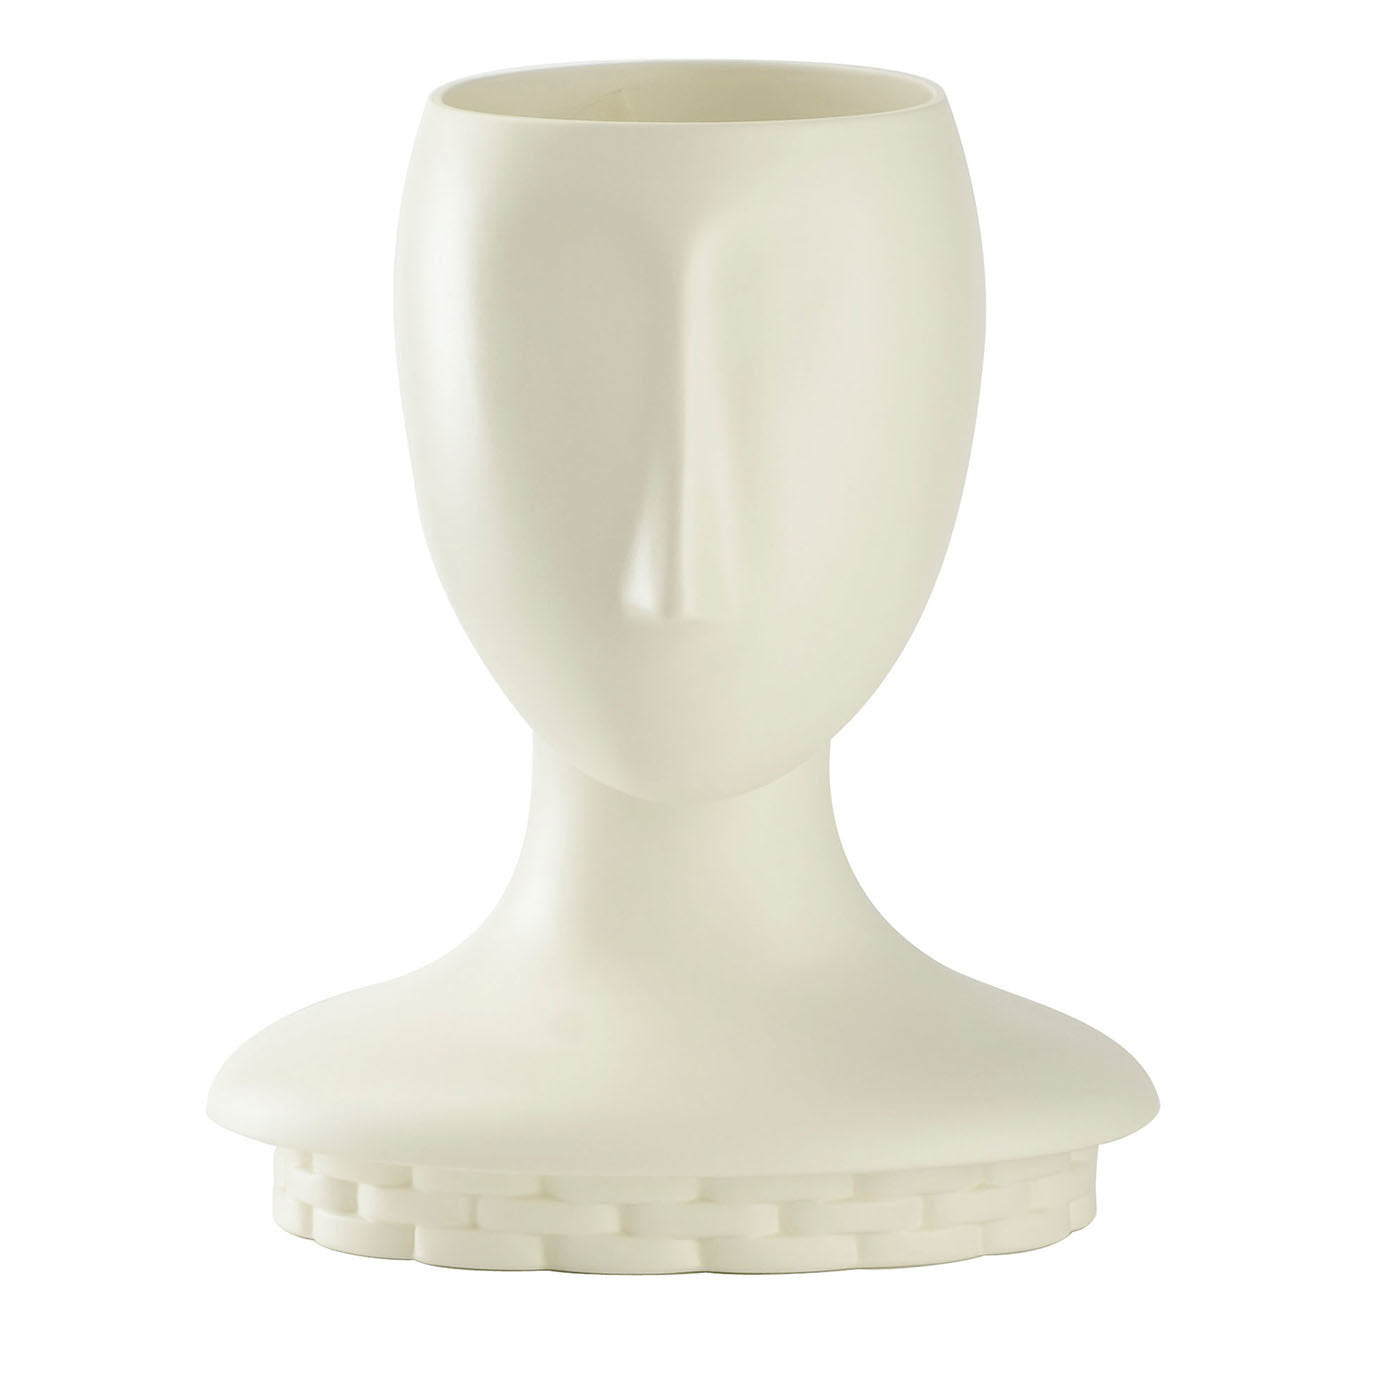 Blondie Anthropomorphic Vase - Main view